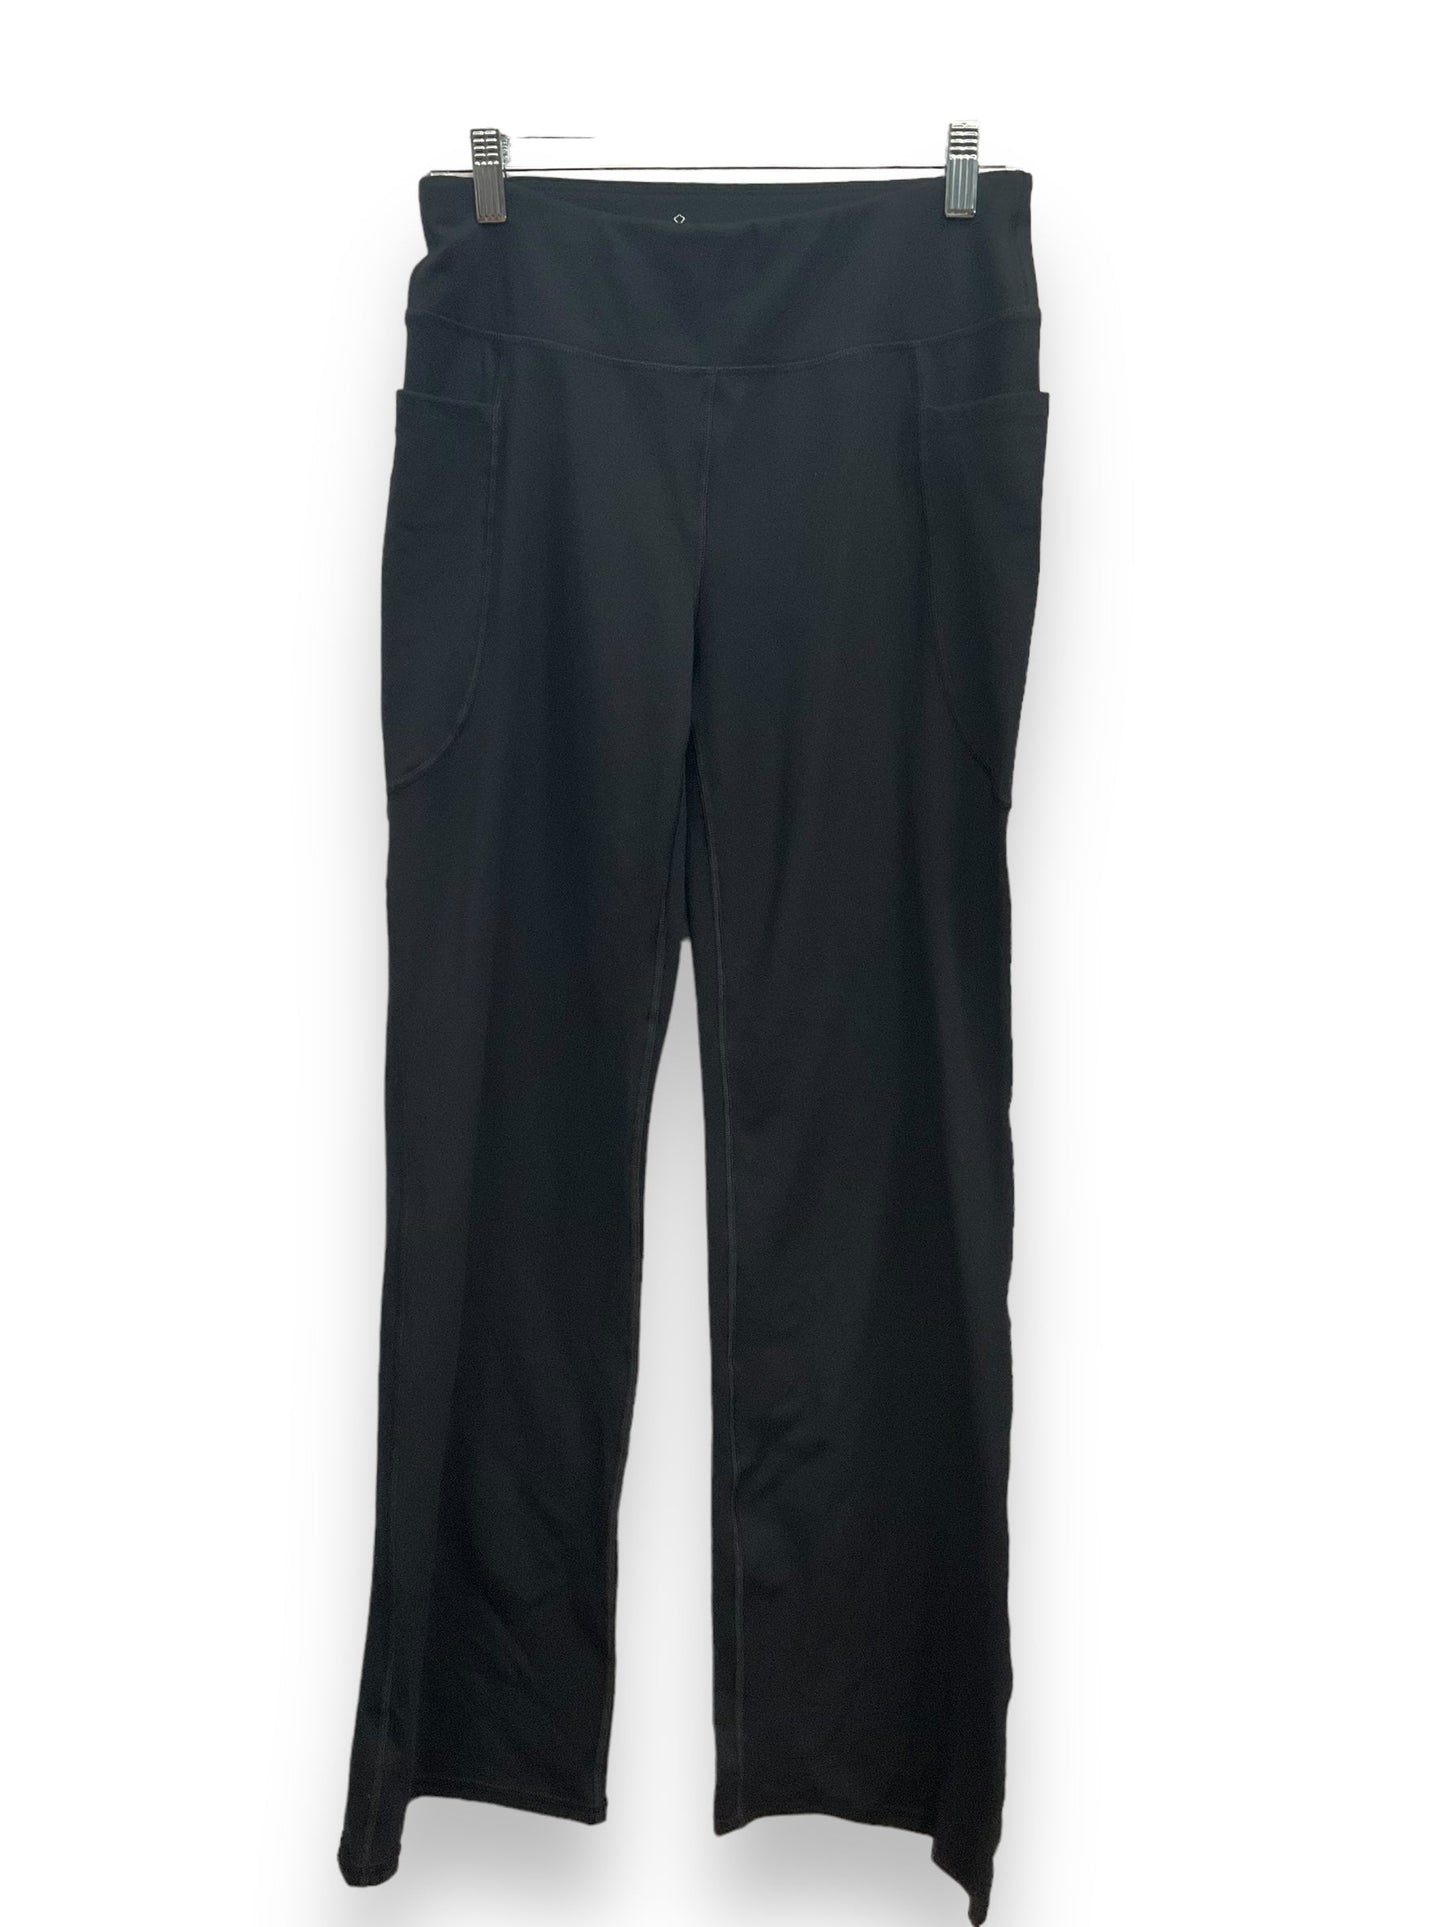 Black Pants Leggings Clothes Mentor, Size M